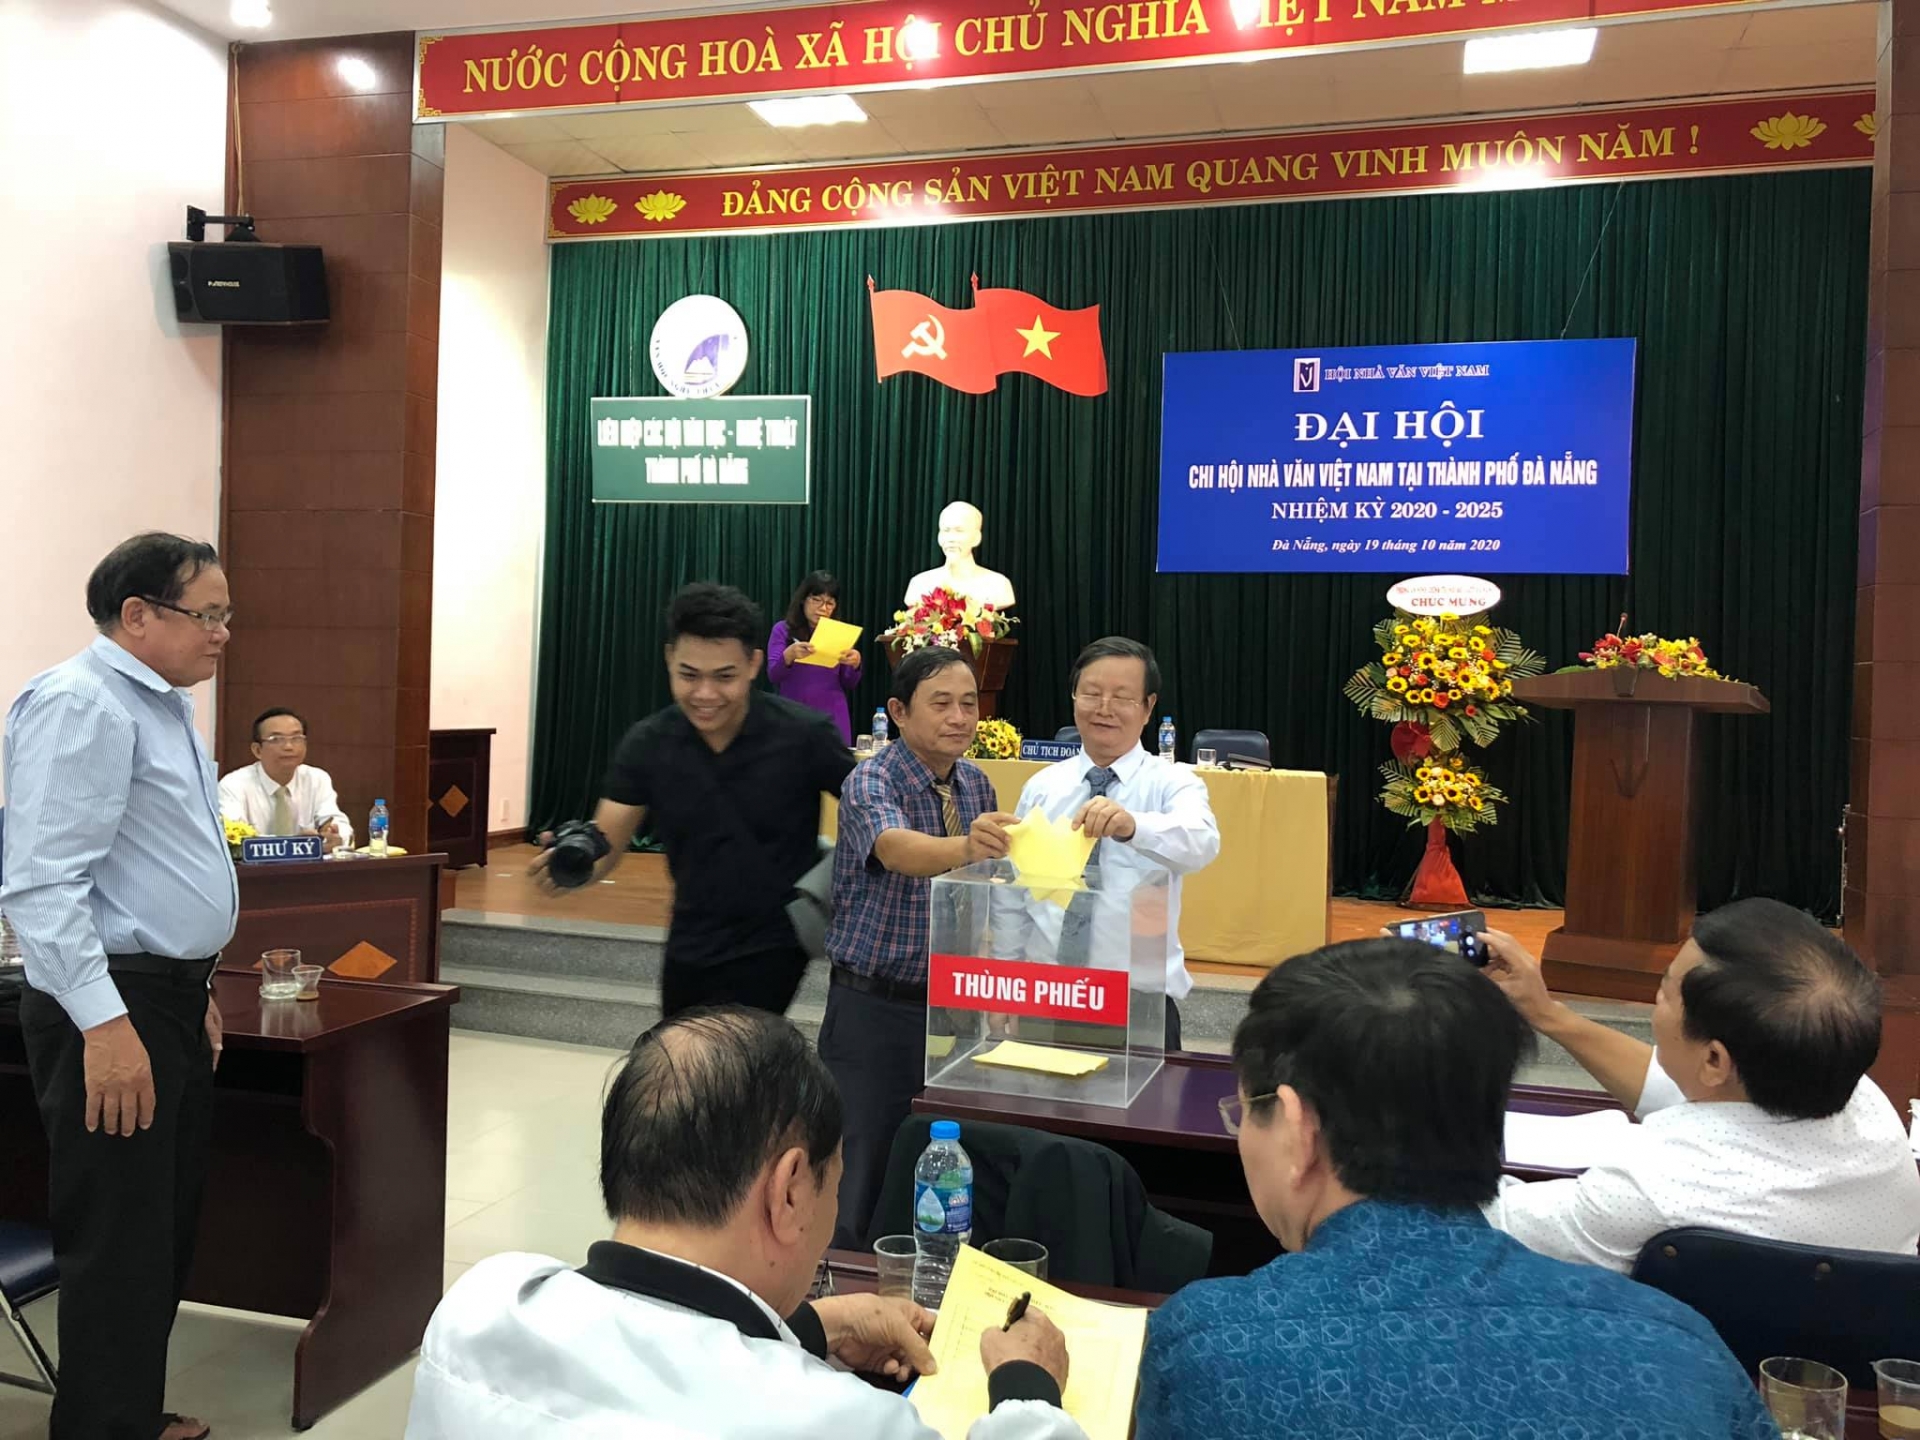 Đại hội cơ sở Chi hội Nhà văn Việt Nam tại Đà Nẵng